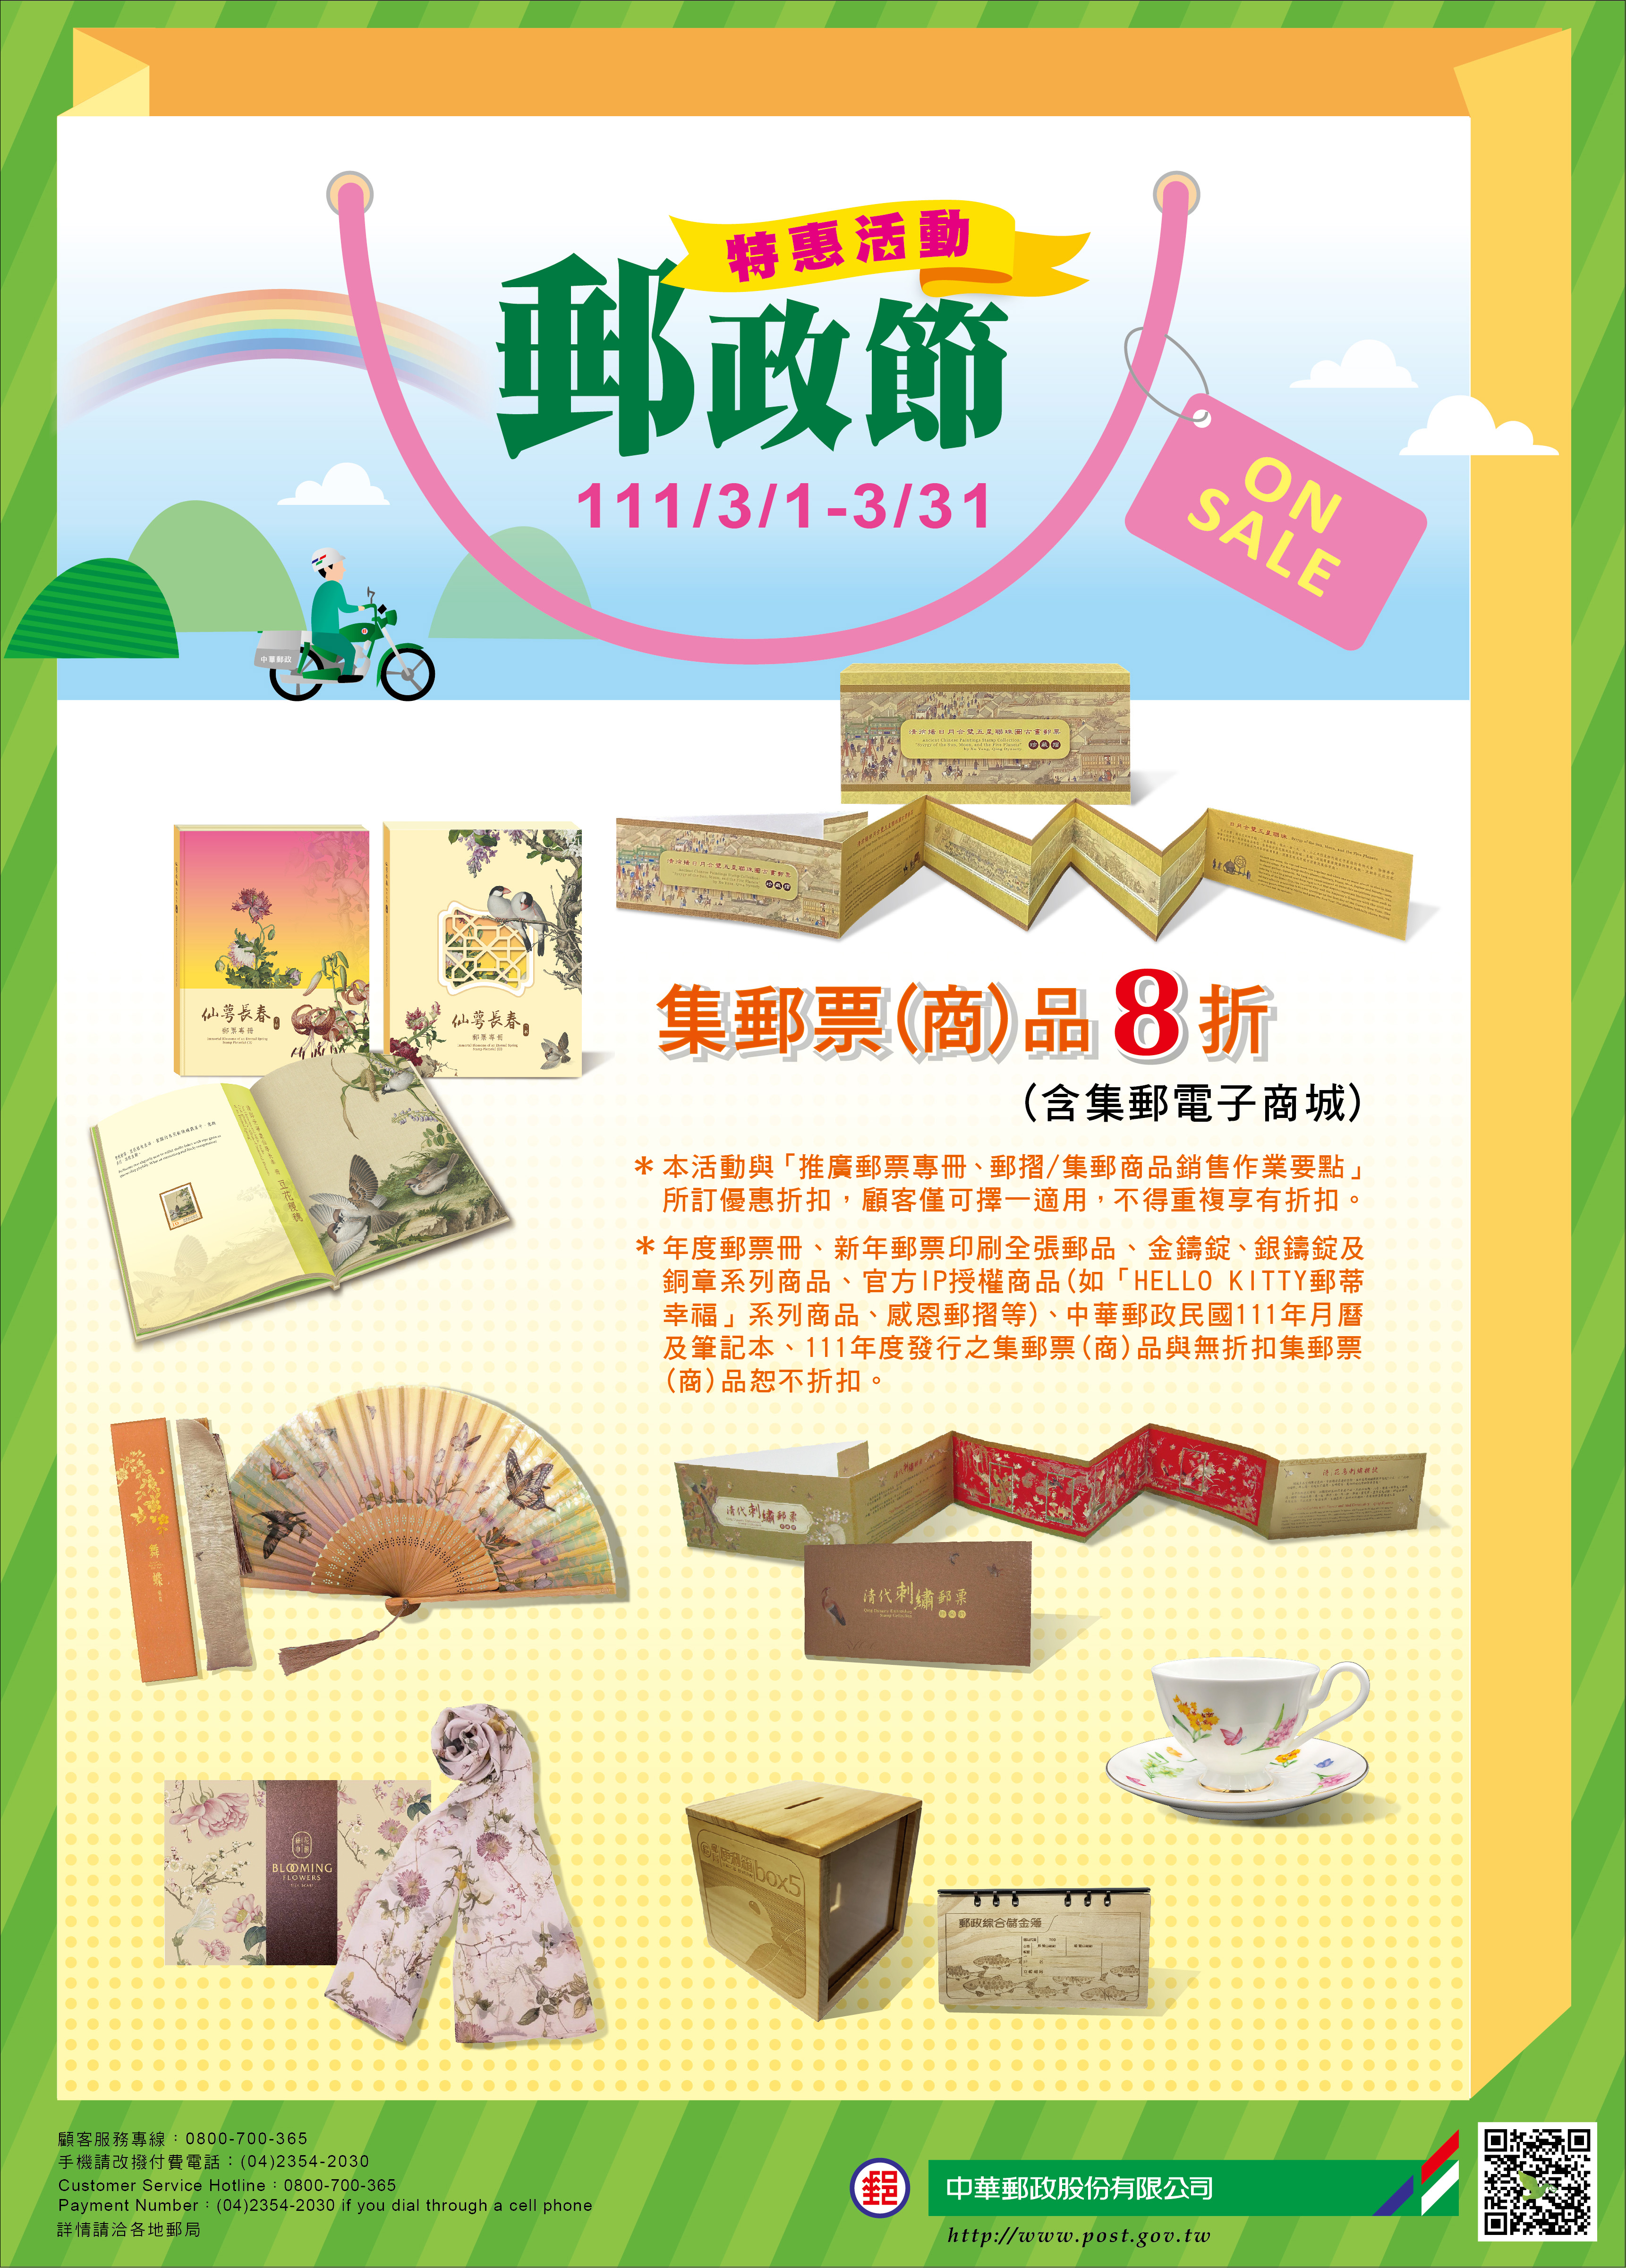 歡慶郵政節  推出集郵票(商)品優惠活動